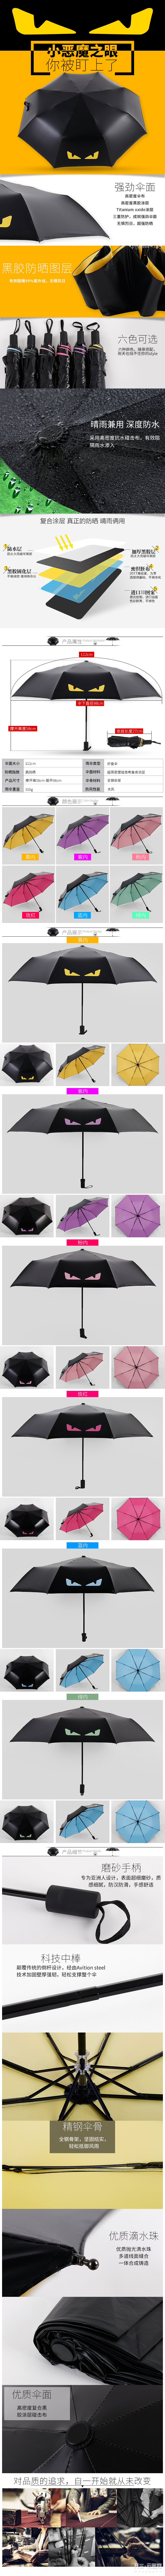 淘宝美工守望折叠高端大气有档次的小黑伞雨伞日用品详情雨伞。作品